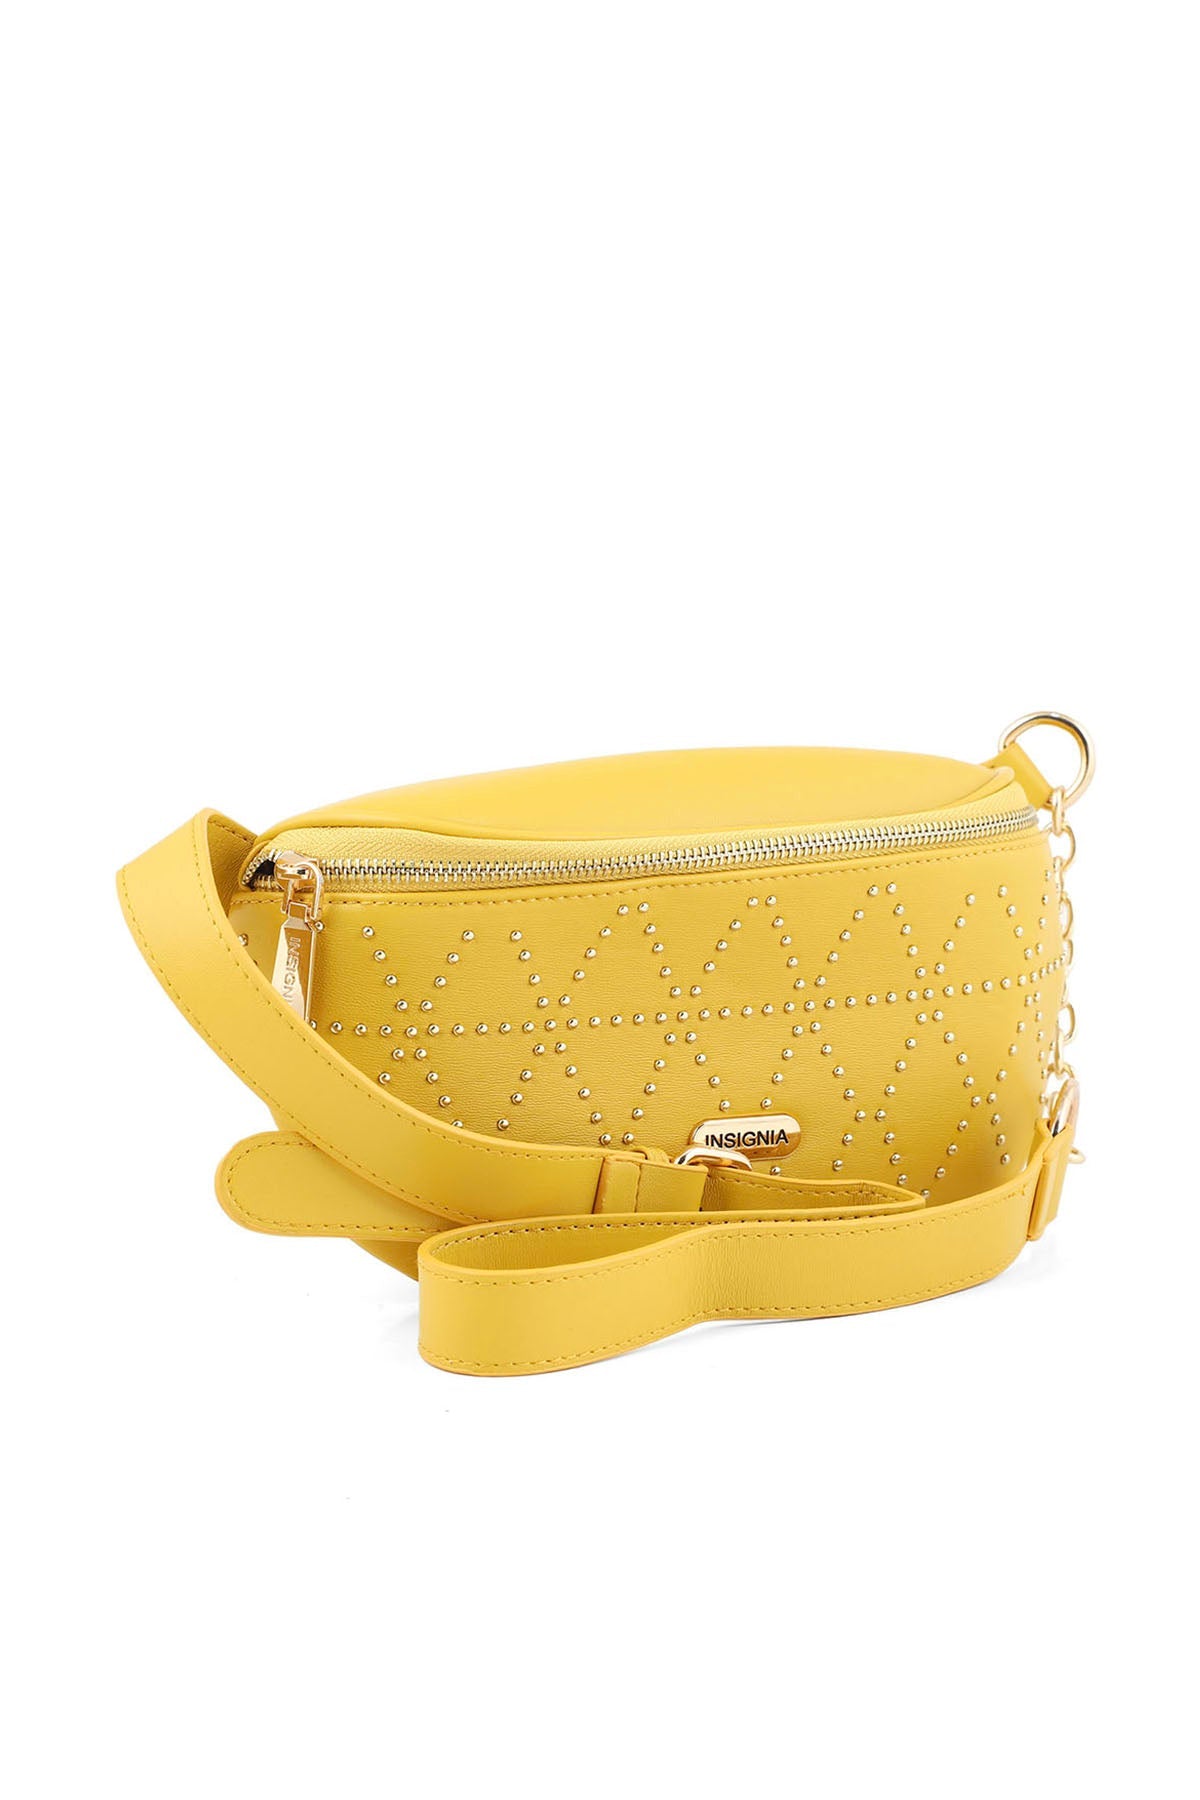 Cross Shoulder Bags B15061-Yellow